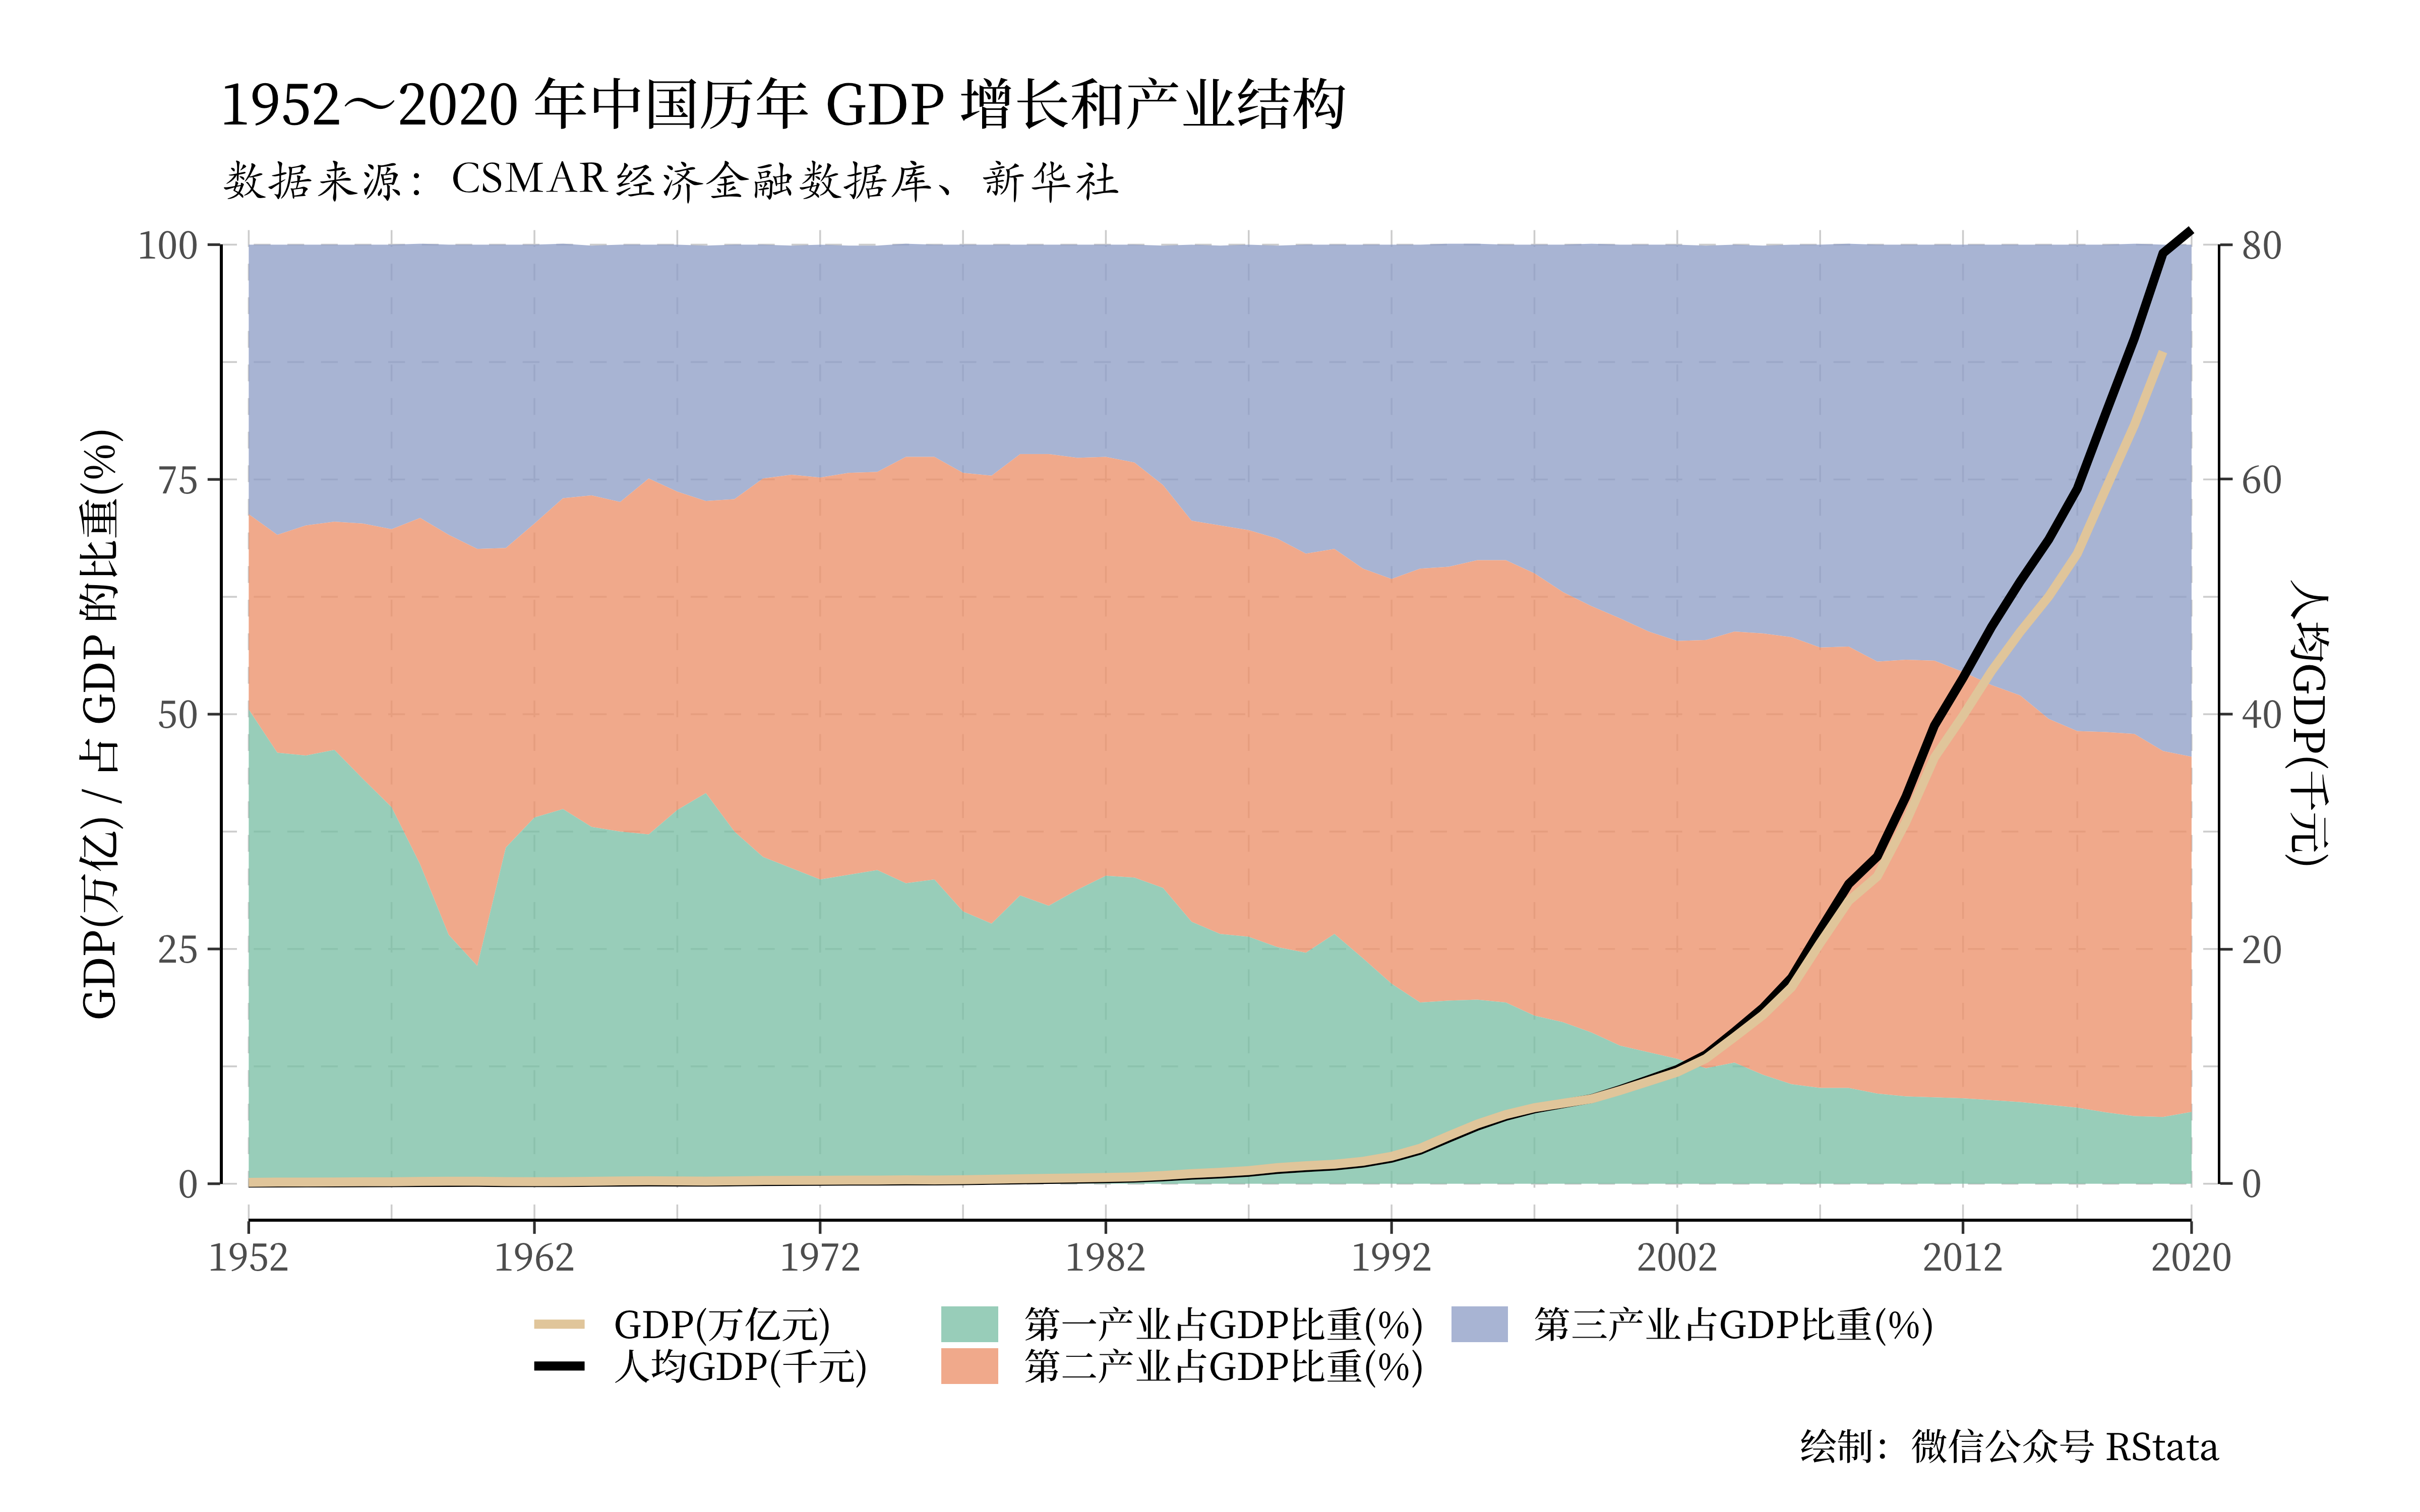 1992～2020 年中国 GDP 增长与产业结构变化